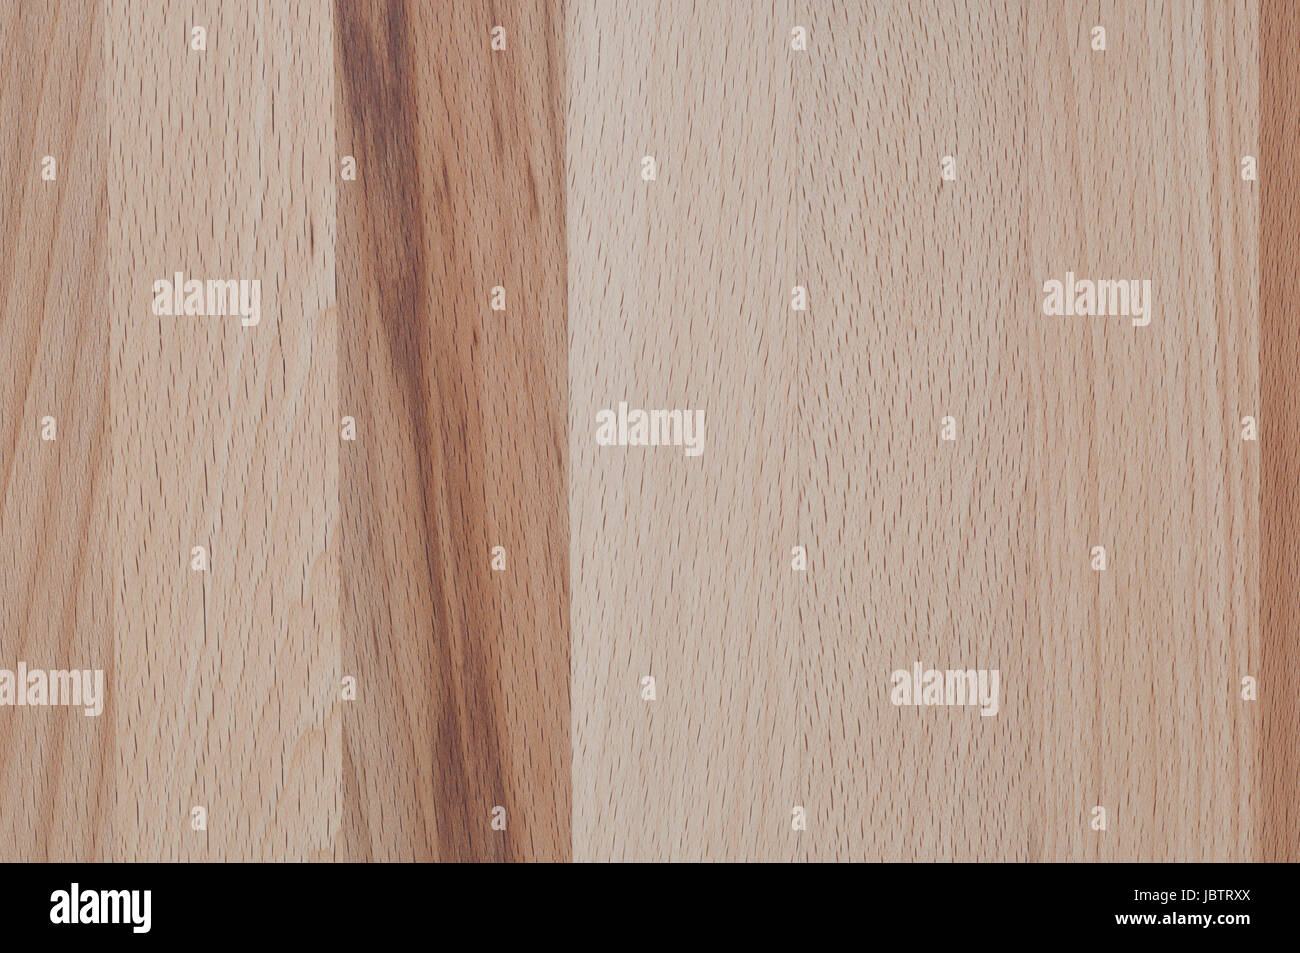 Hintergrund, Holzstruktur von einer Kirschbaum Holzplatte. Stock Photo